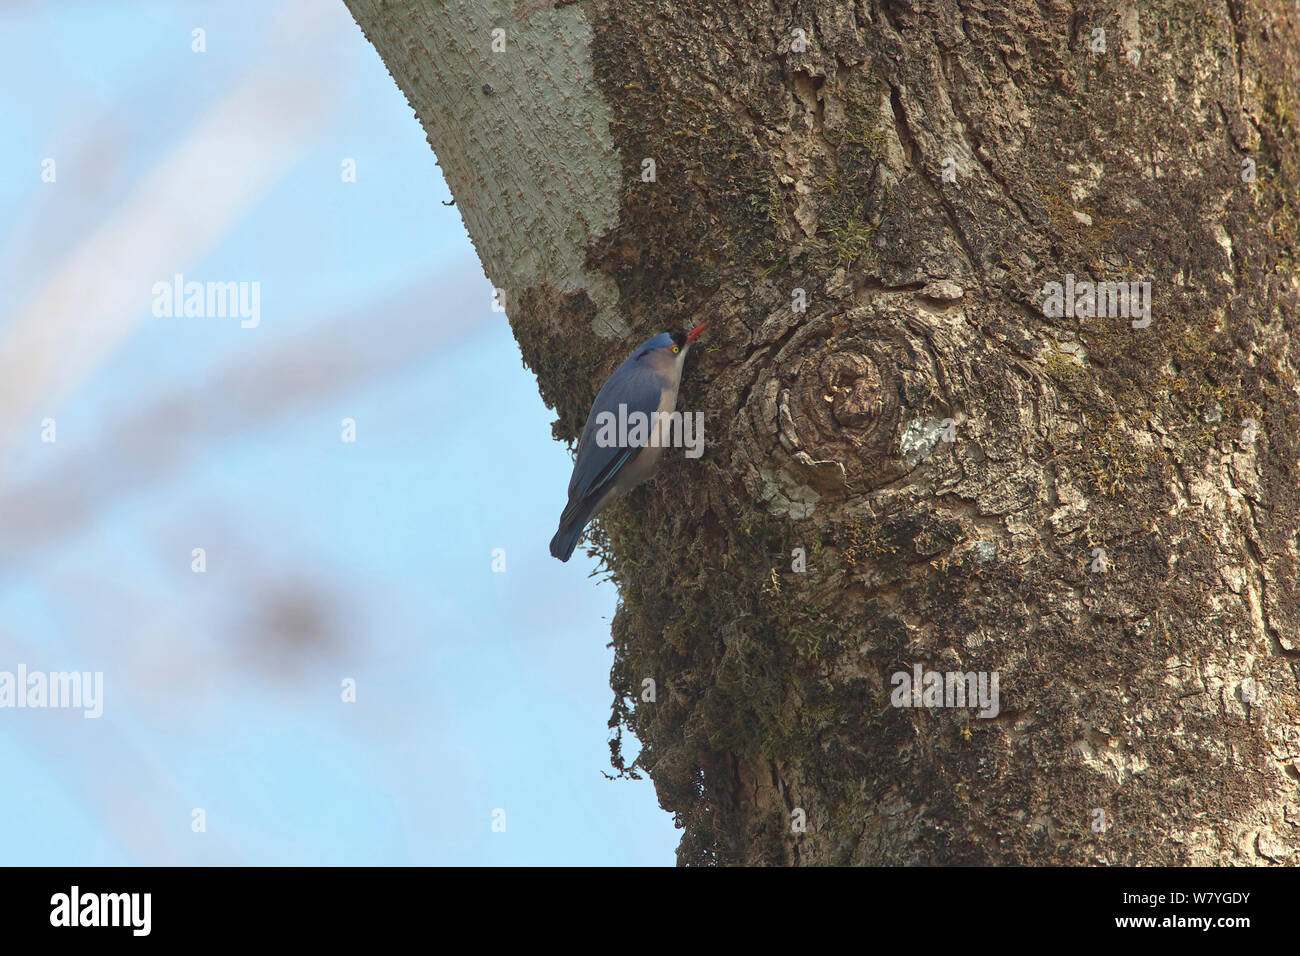 Trepador de fachada de terciopelo (distritos de Sitta frontalis) en el tronco del árbol, el condado de Ruili, Dehong Dai y Jingpo Prefectura Autónoma, provincia de Yunnan, China, Febrero. Foto de stock